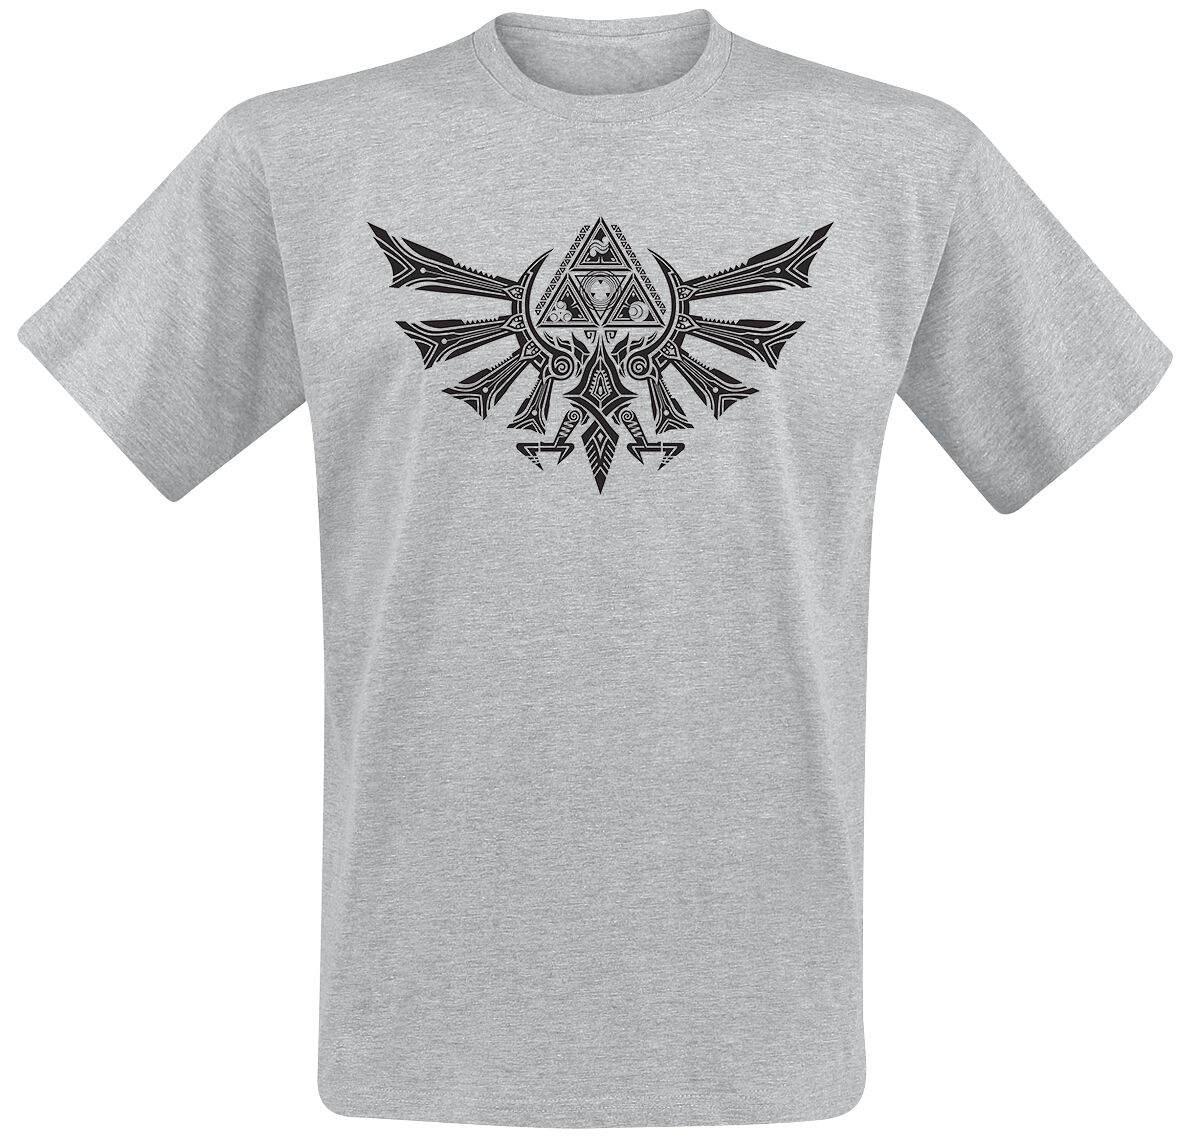 The Legend Of Zelda - Gaming T-Shirt - Hyrule Tribal - S bis XXL - für Männer - Größe M - grau meliert